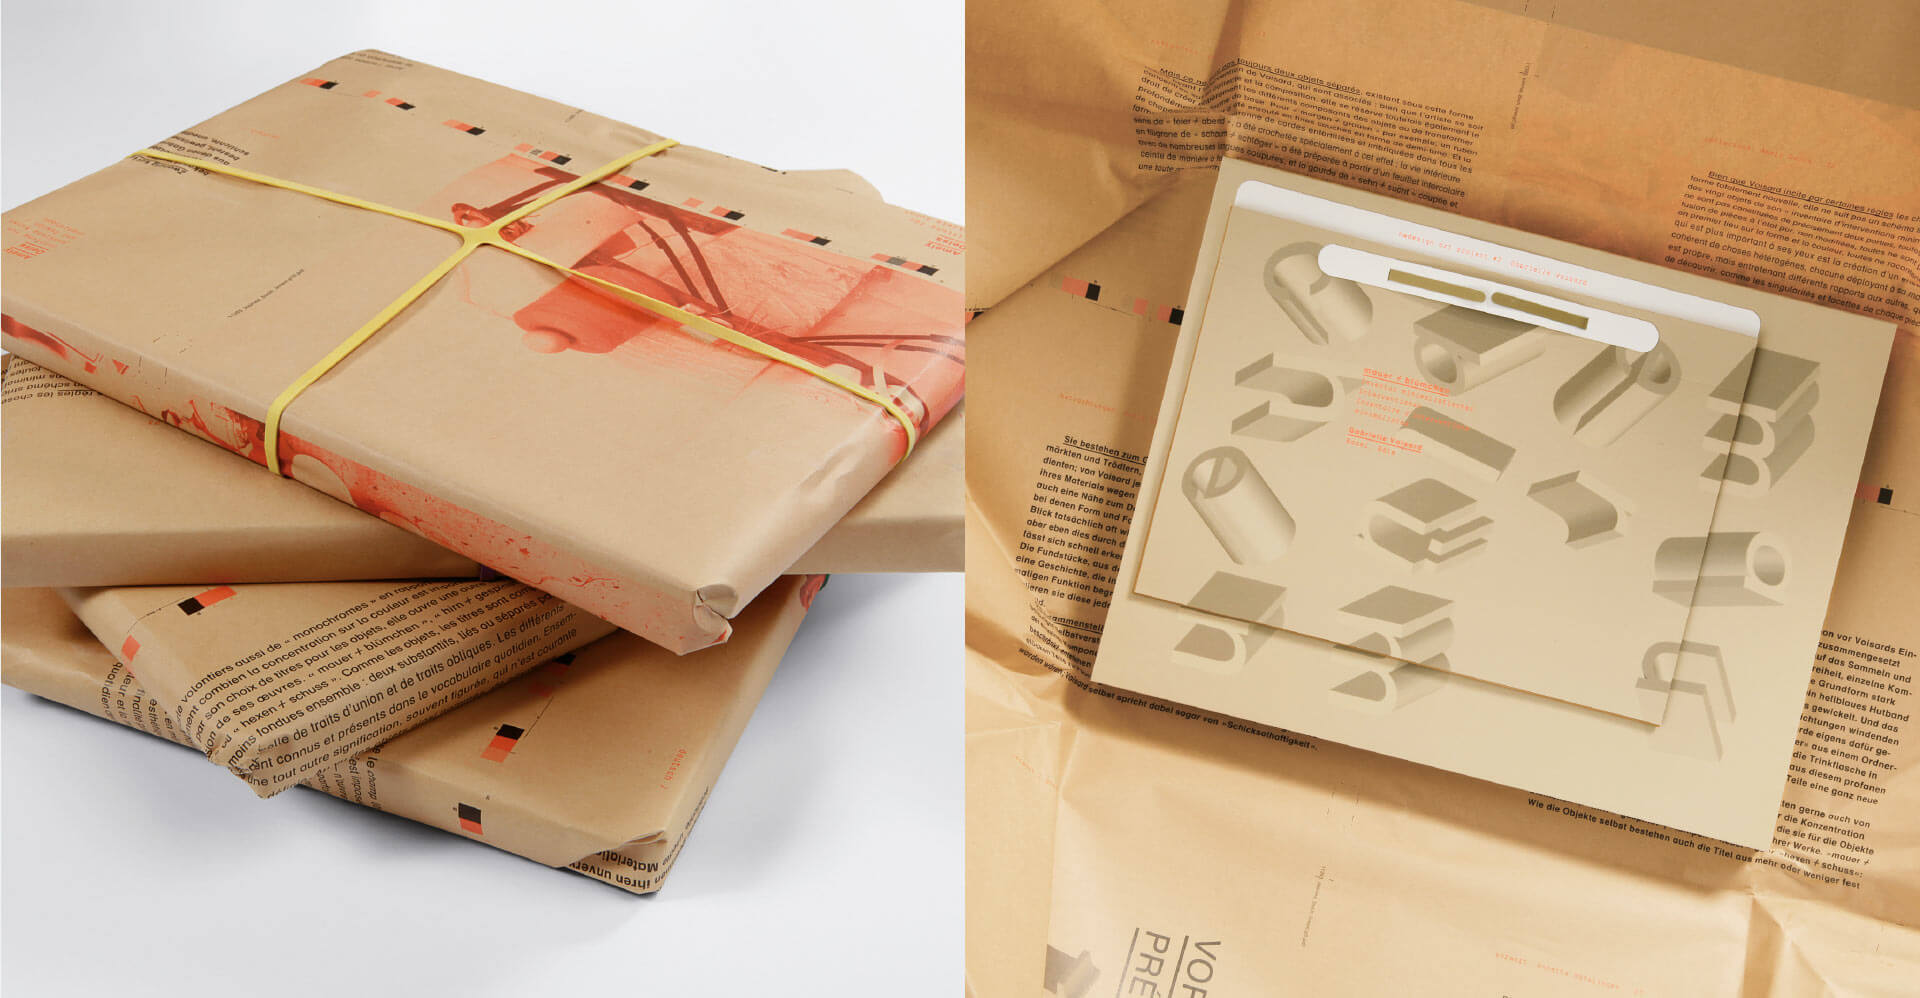 Verpackung mit gestaltetem Packpapier der Art Publikation von dem Kunstprojekt Mauerblümchen neben dran das Buch in der Verpackung